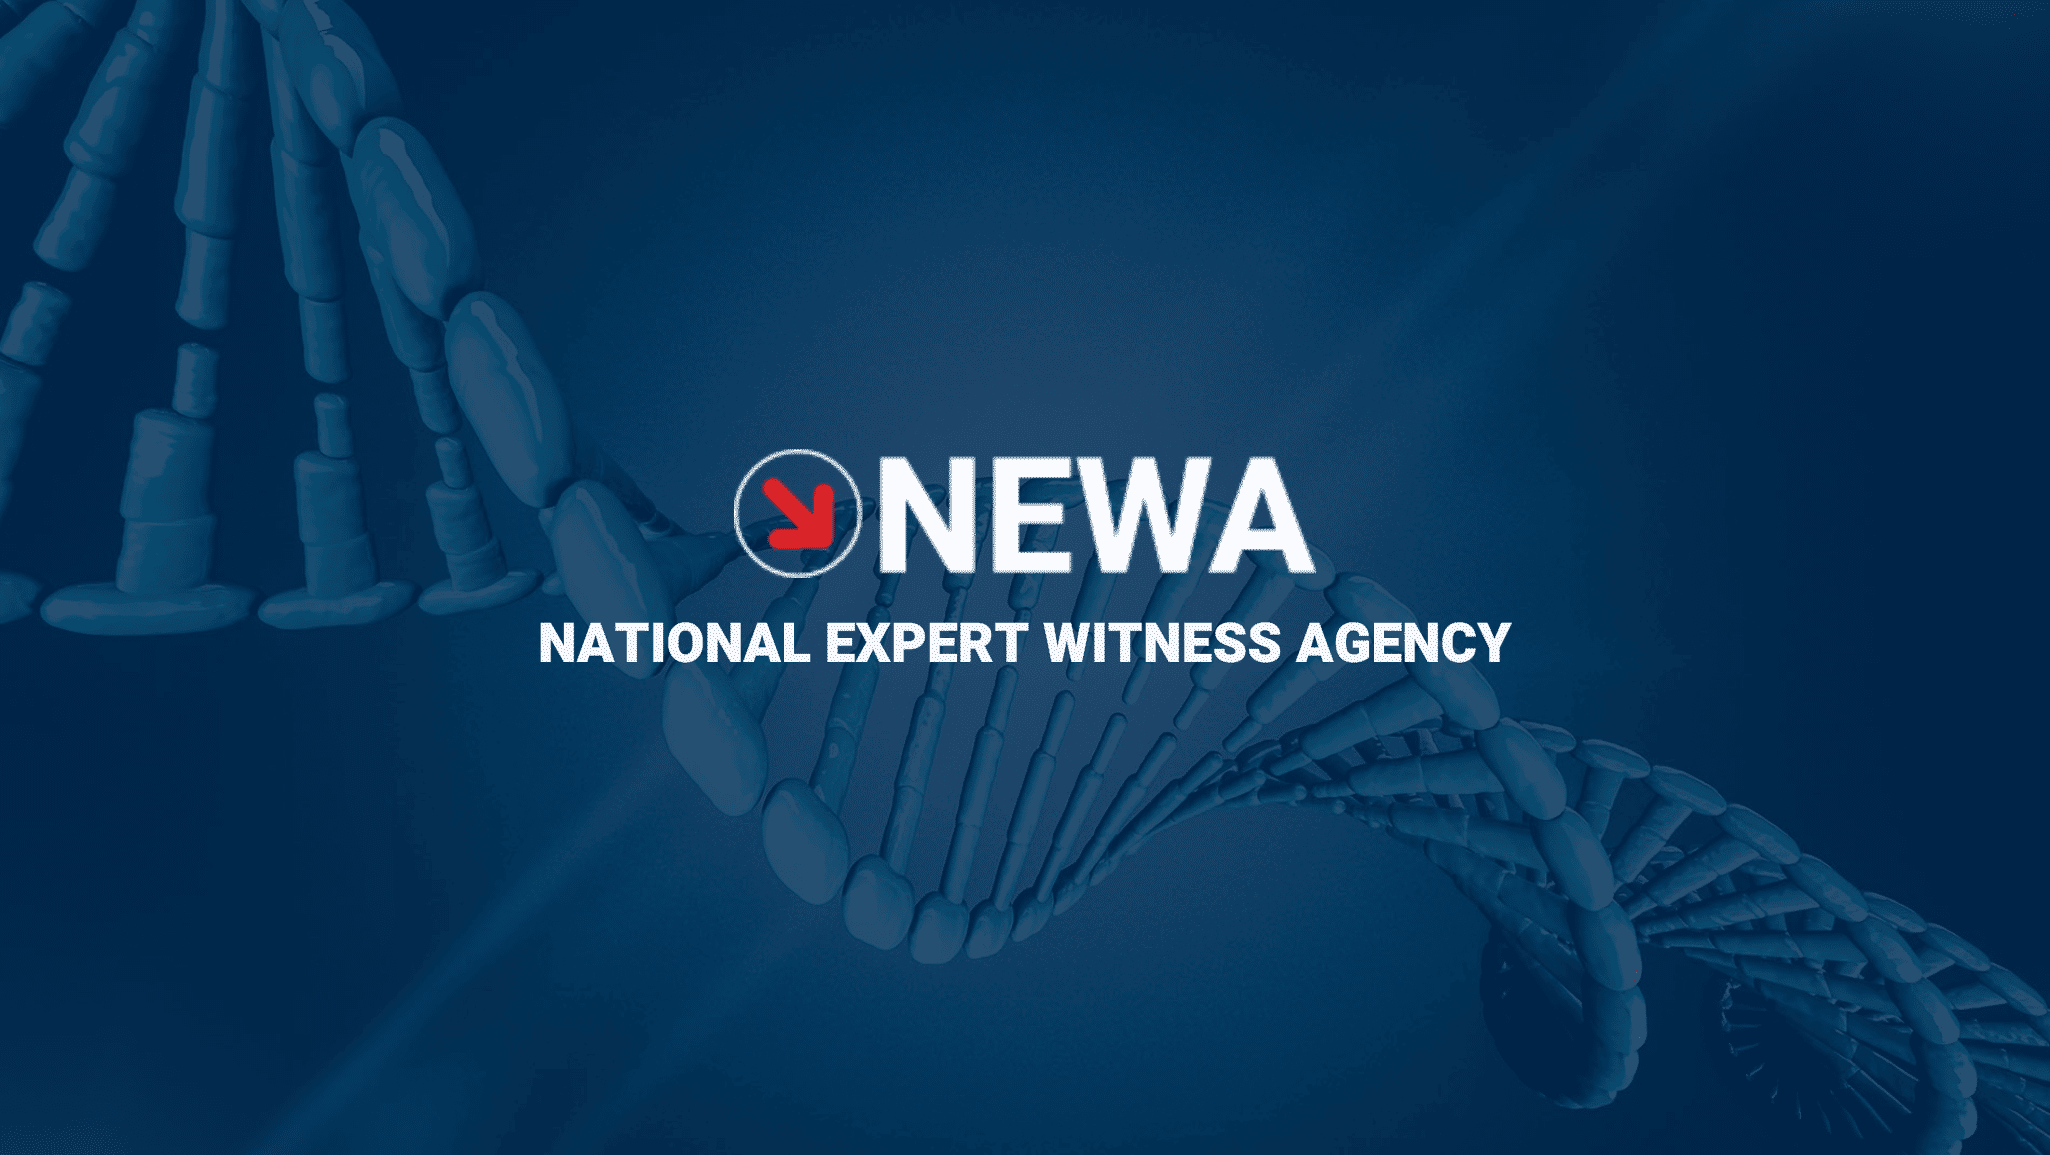 National Expert Witness Agency